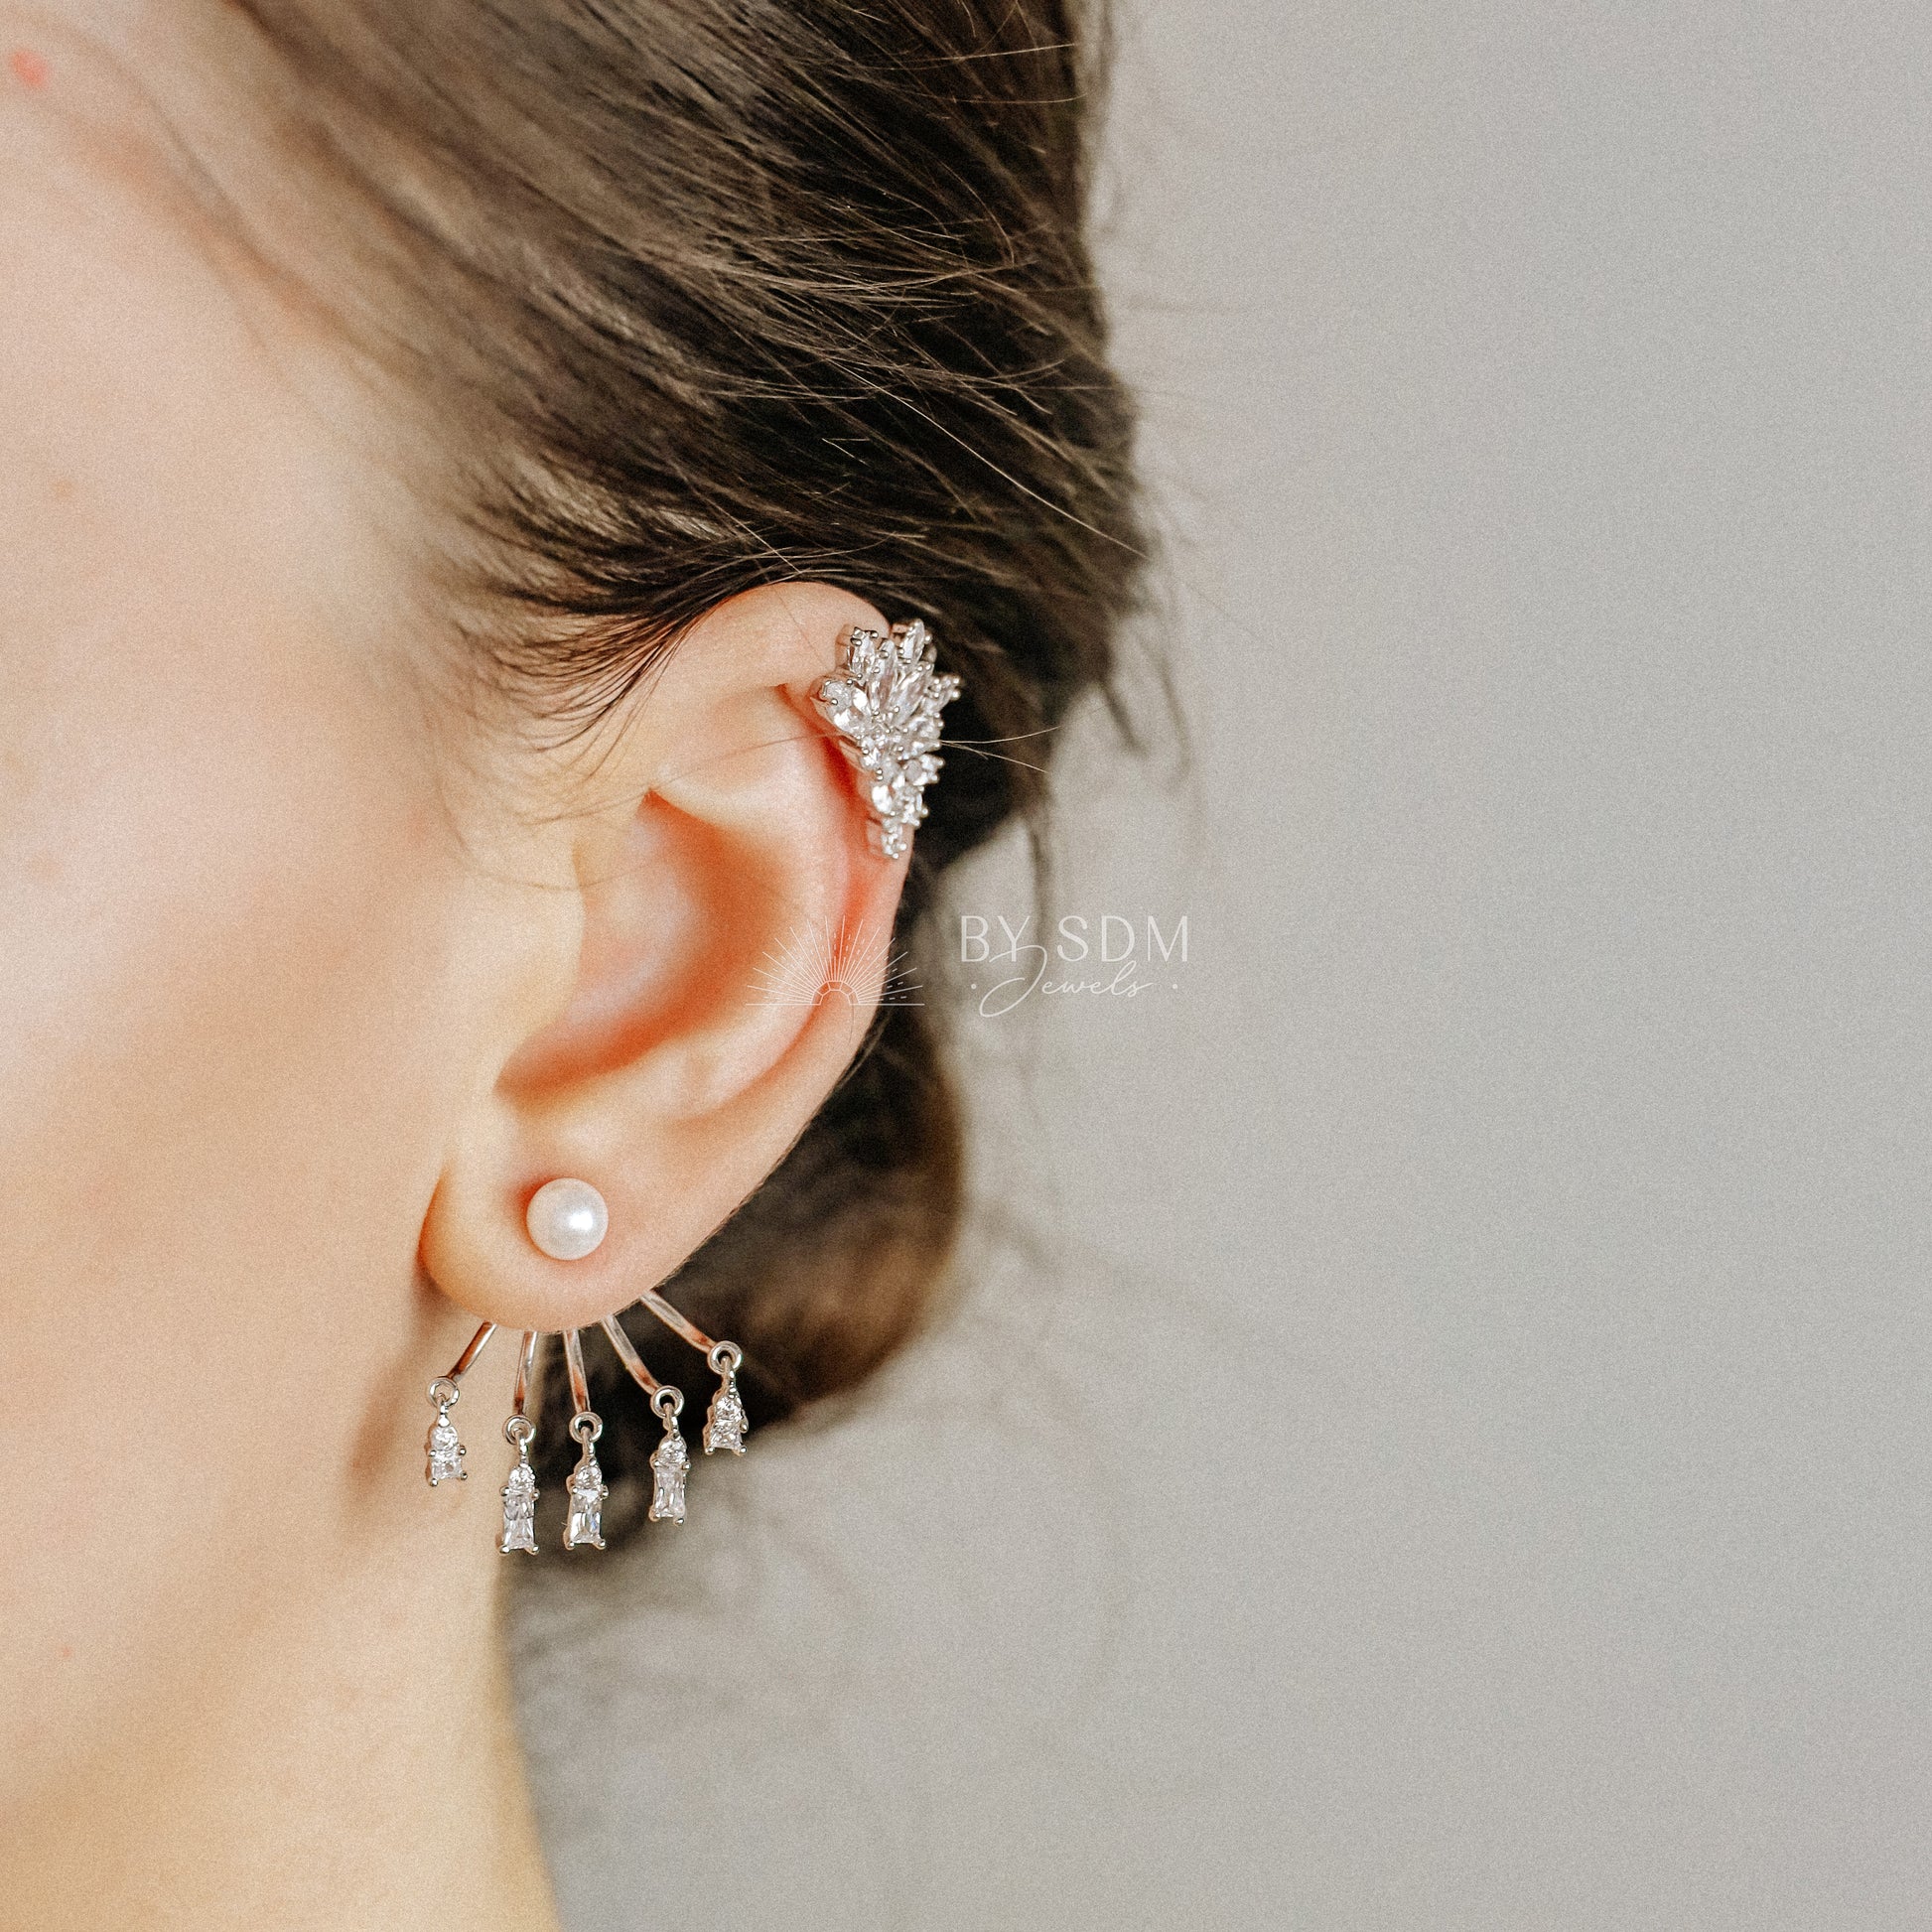 Front Back Ear Jacket Earring and Dainty Ear Cuff Earring in Sterling Silver 925 • BYSDMJEWELS